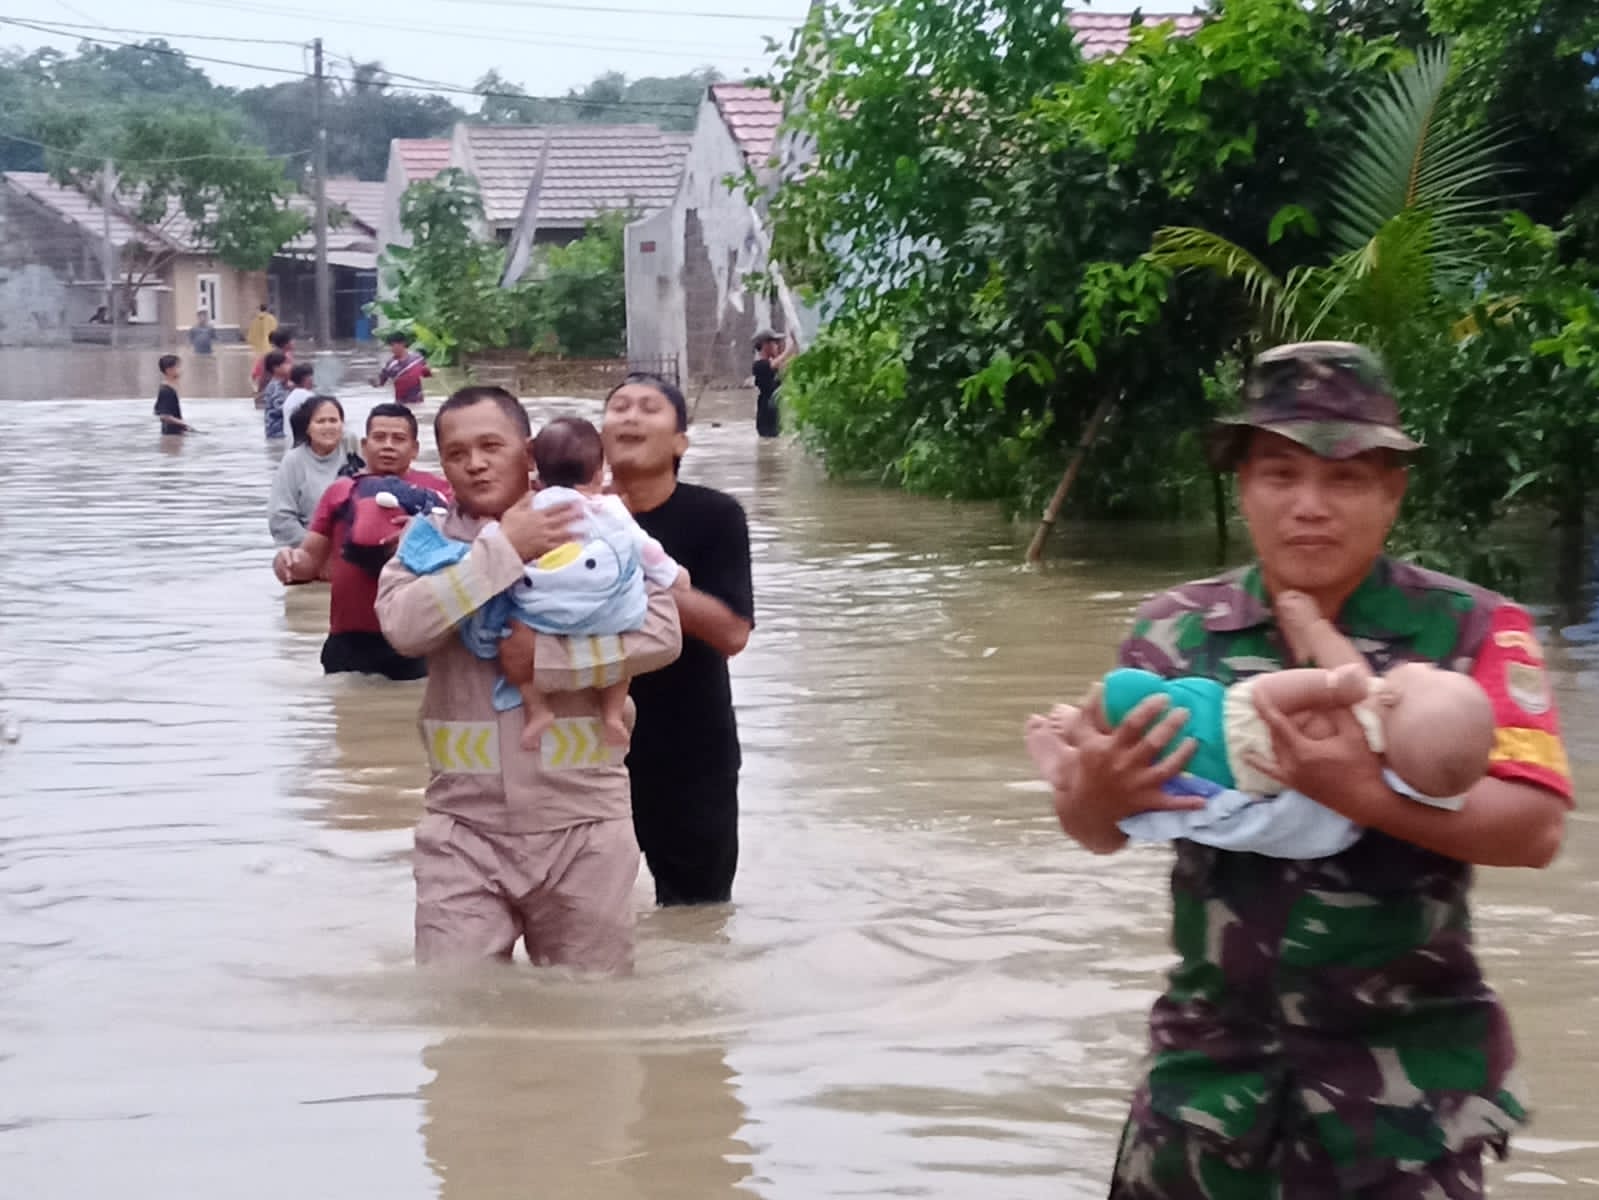 TNI Polri Bantu Evakuasi Warga Terdampak Banjir di Cibarusah